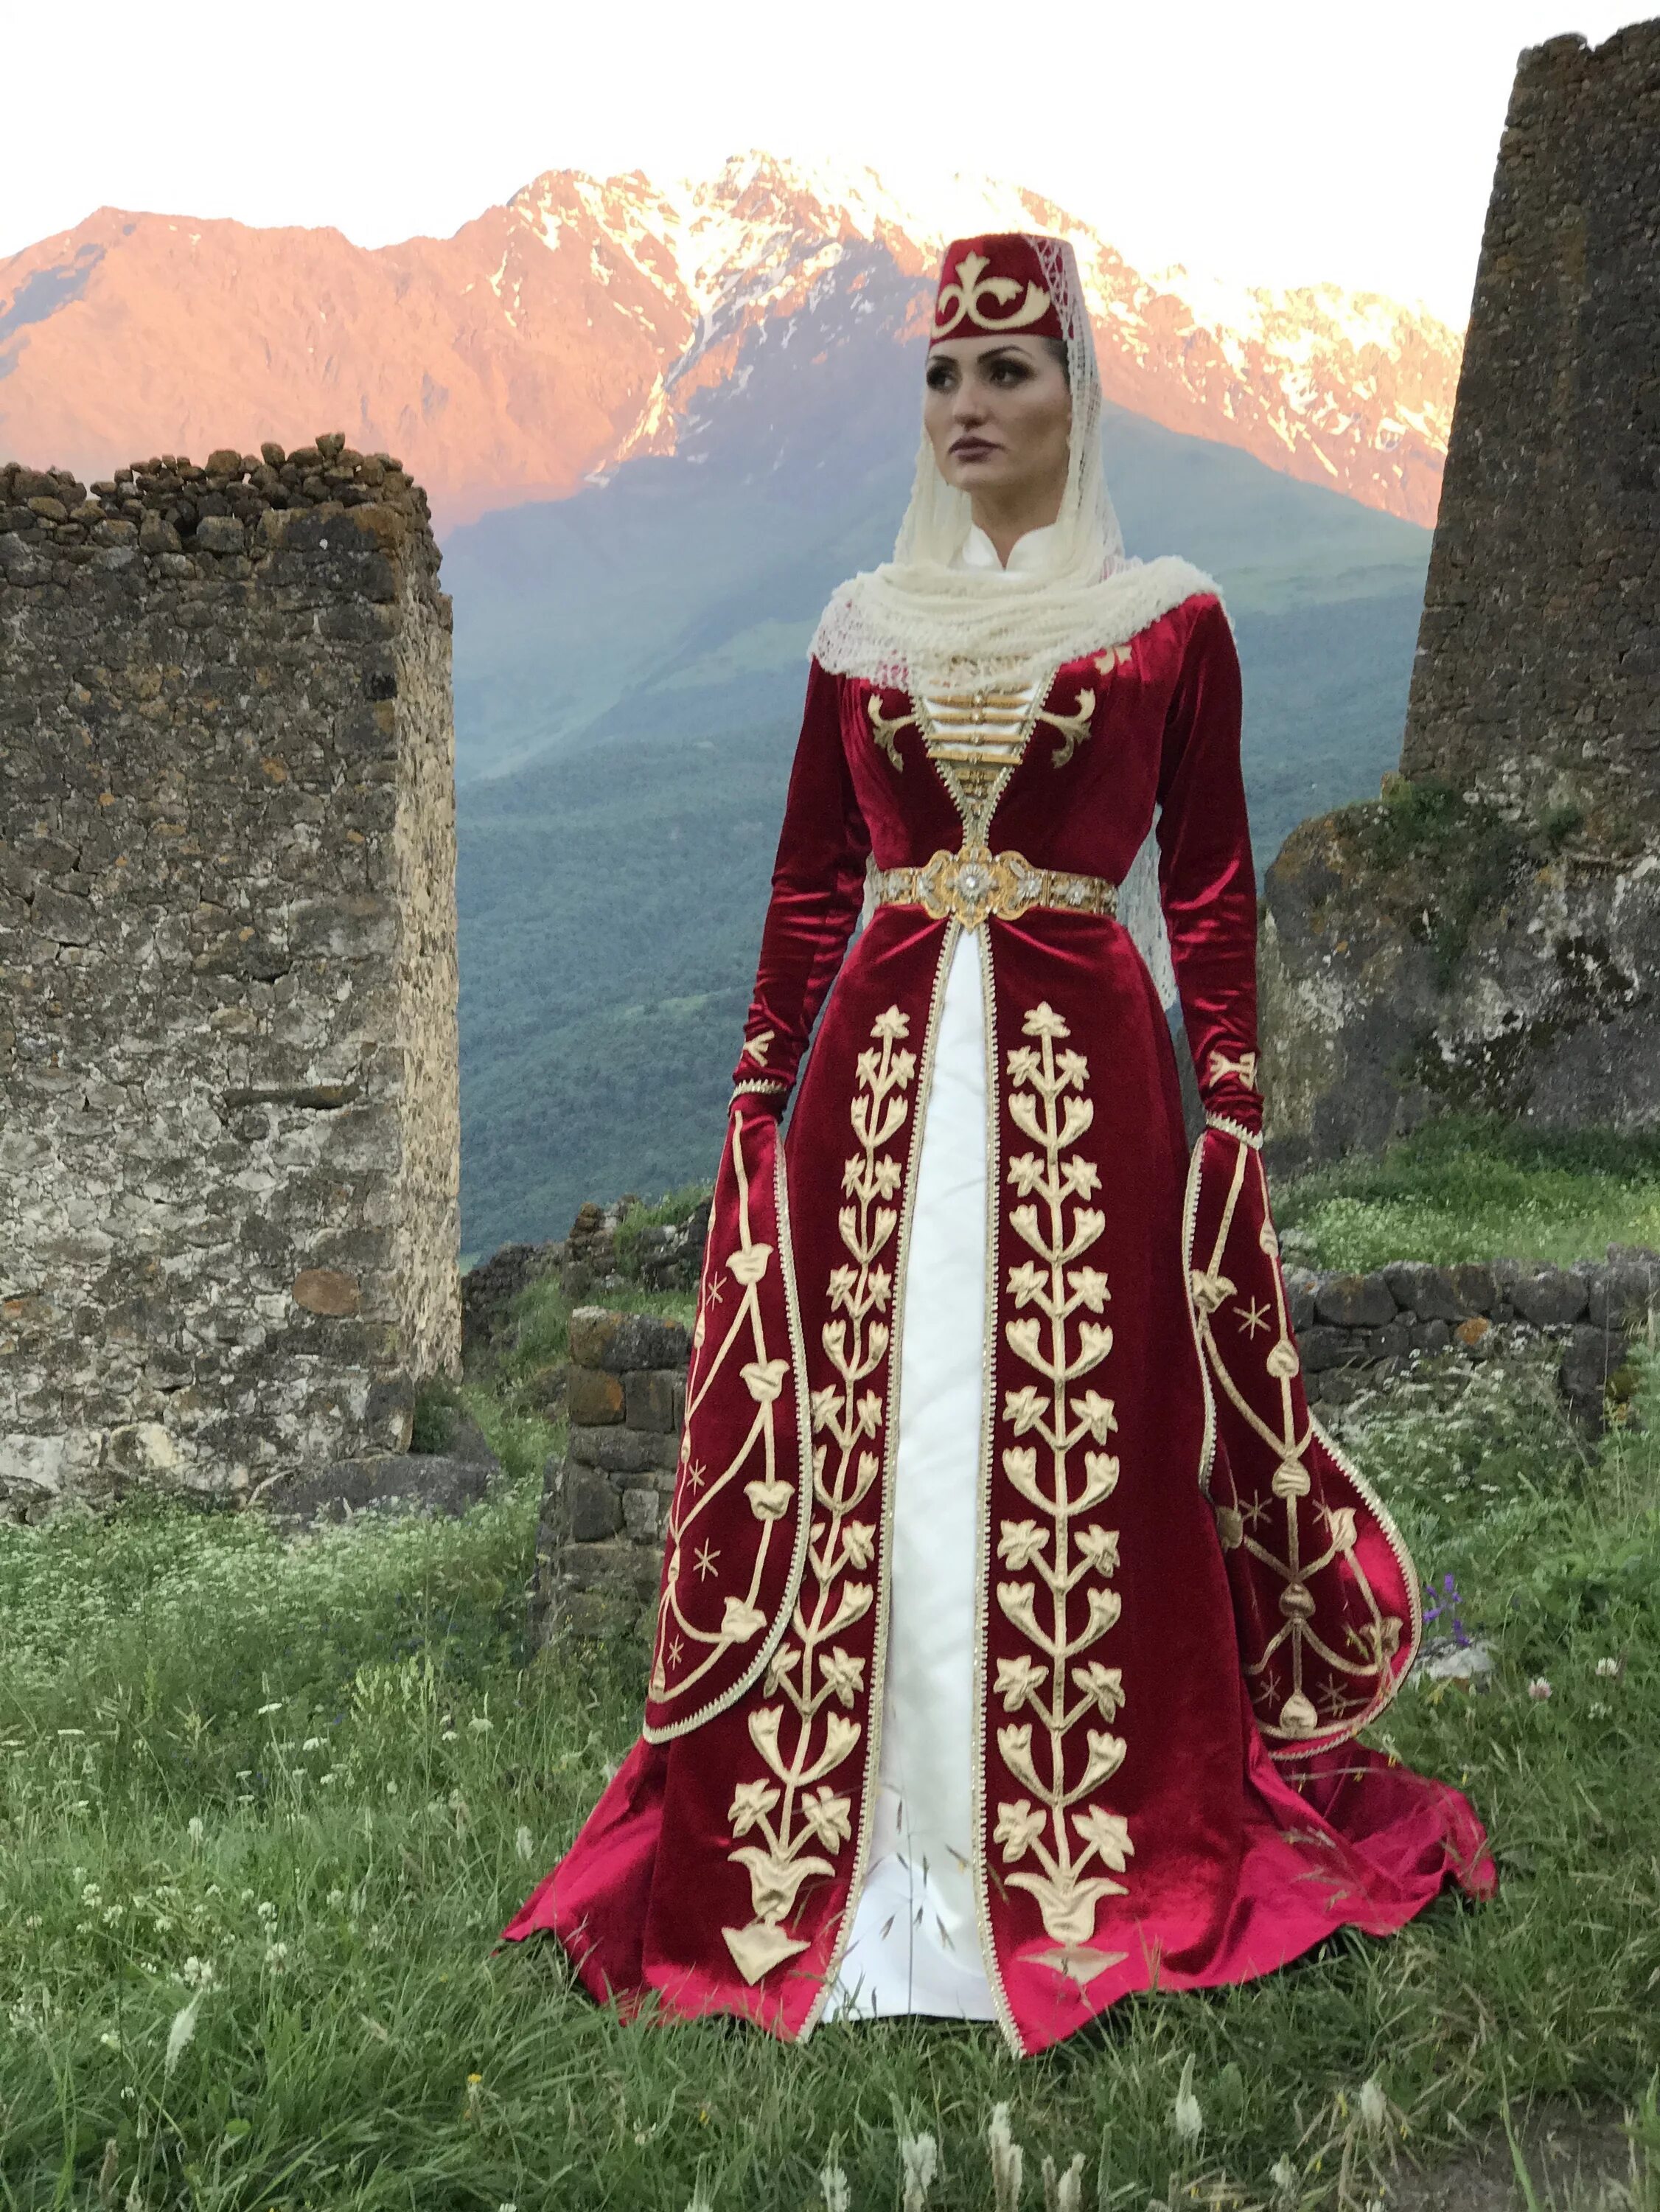 Костюм осетина. Национальный костюм карачаевцев. Нац костюм Северной Осетии. Национальное платье карачаевцев. Северная Осетия Алания национальный костюм.